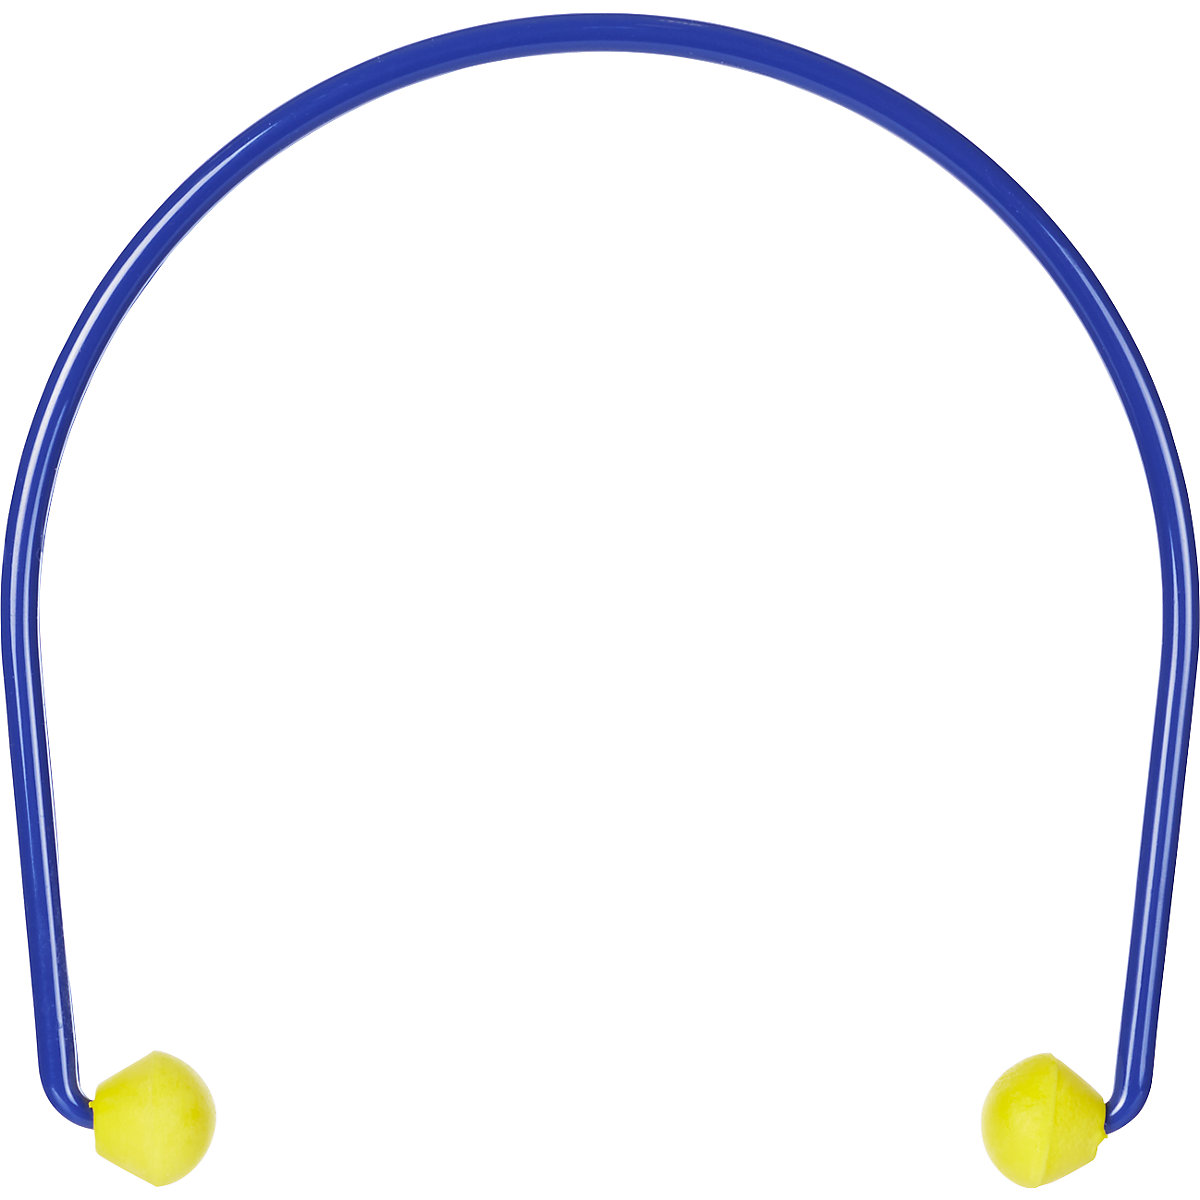 E-A-Rcaps™ banded earplugs – 3M